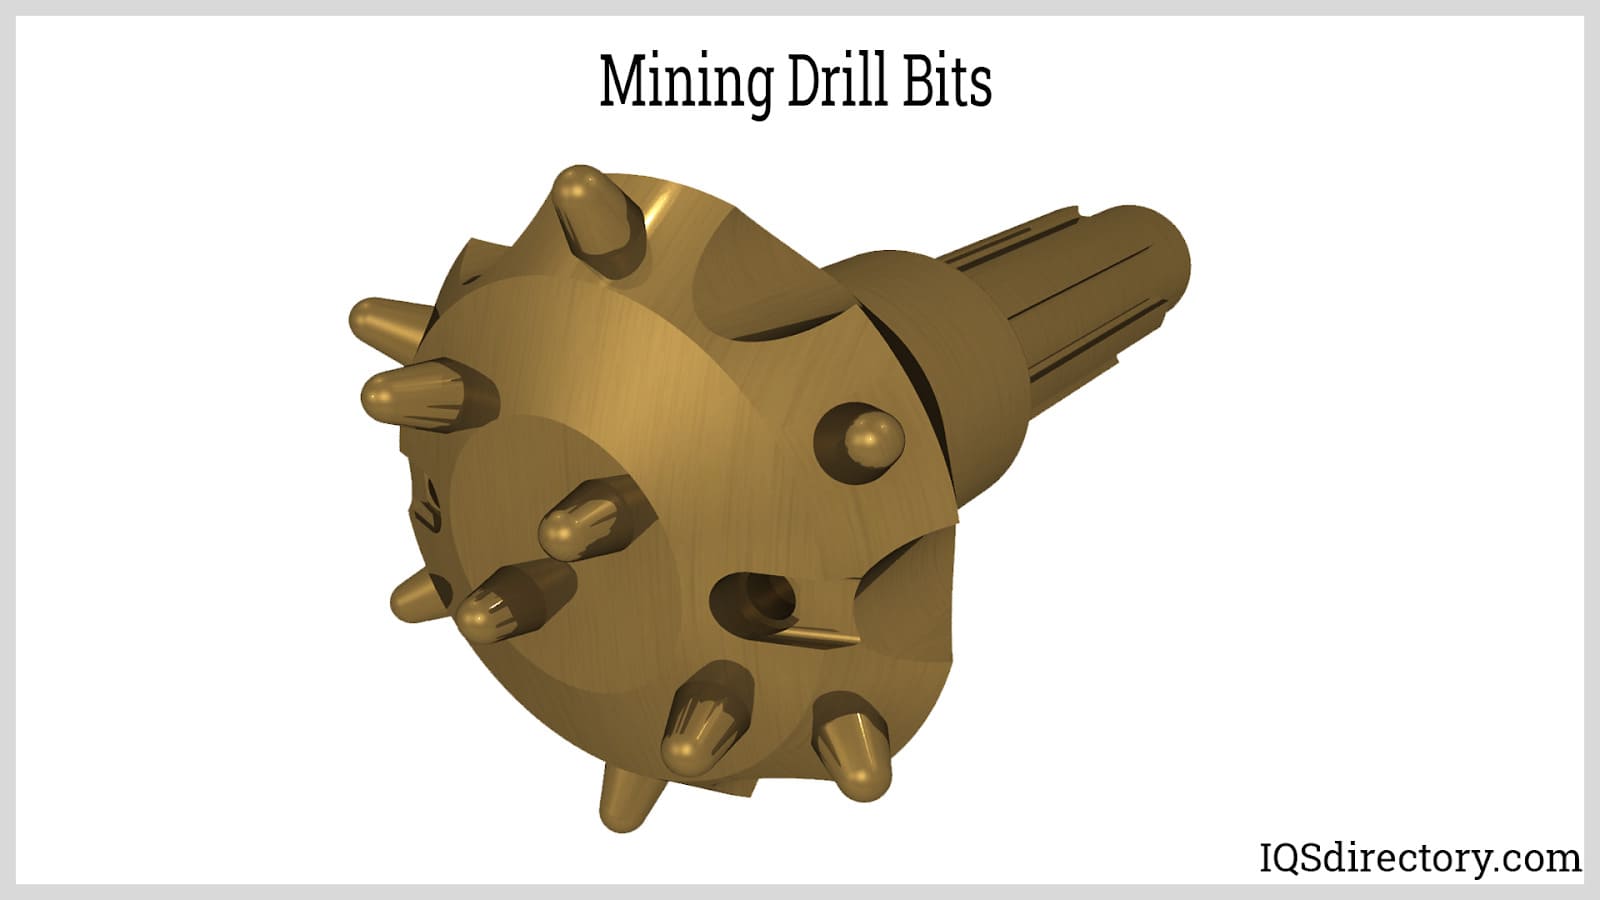 Mining Drill Bits